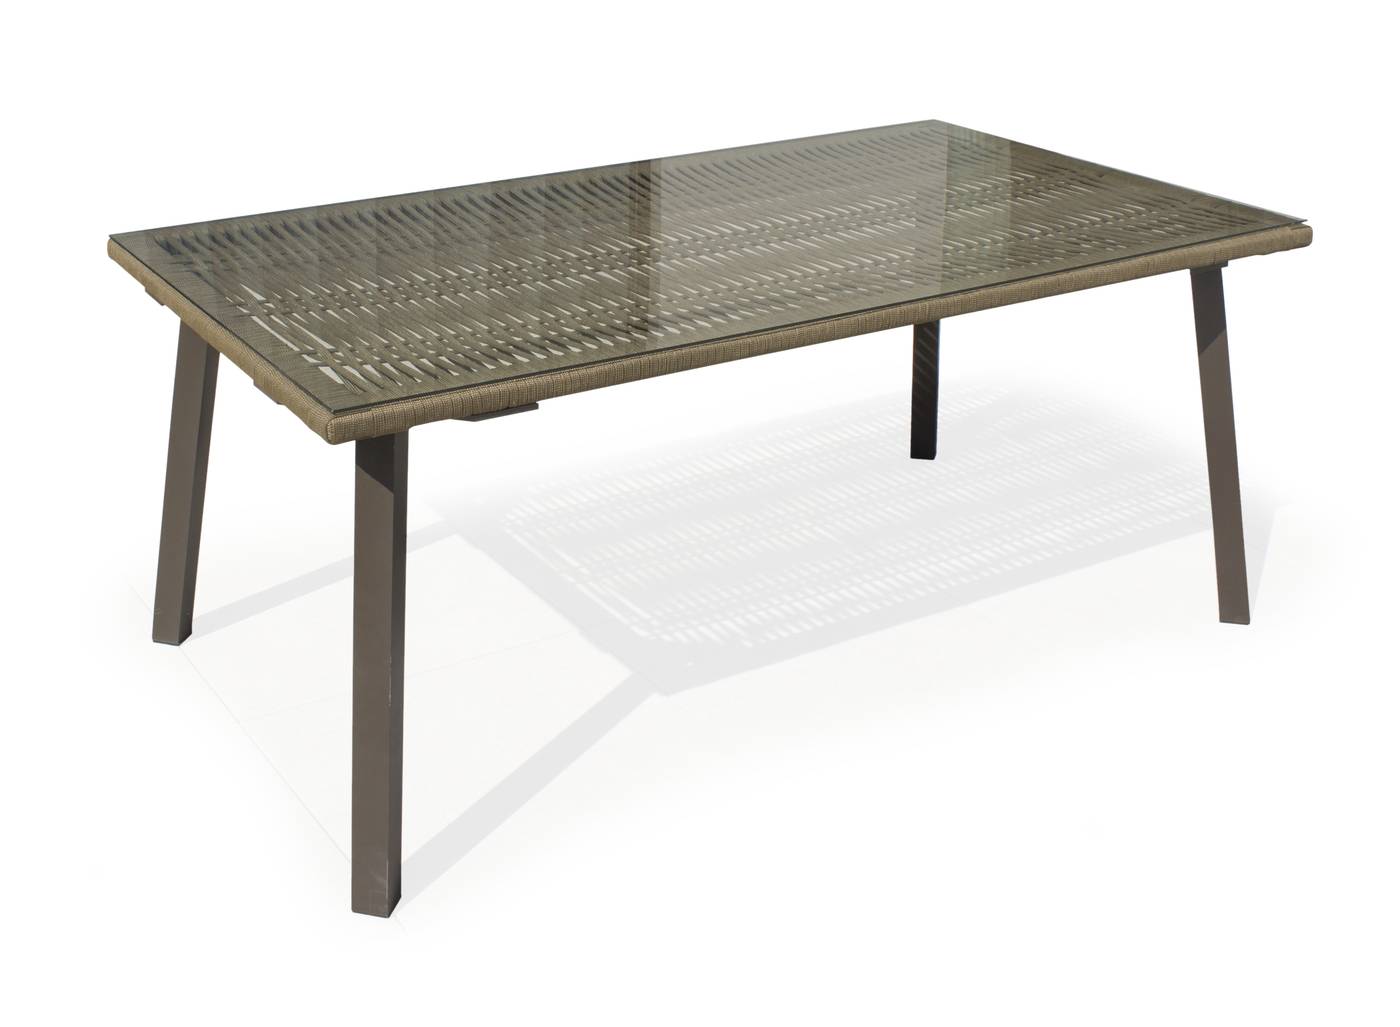 Mesa rectangular de 180 cm, con tablero de cuerda y tapa de cristal templado. Estructura robusta de aluminio color gris o champagne.